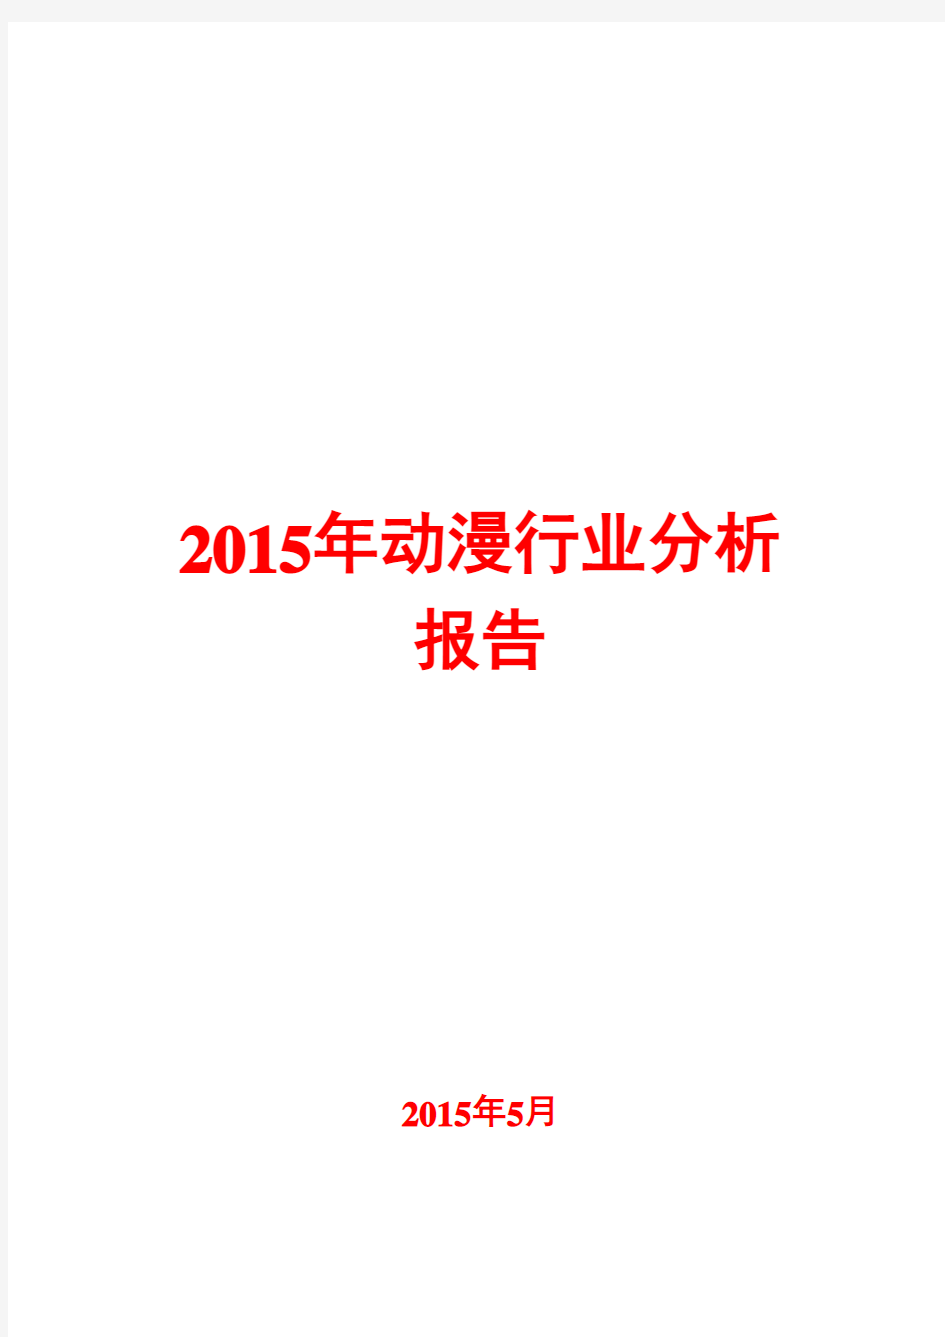 2015年动漫行业分析报告